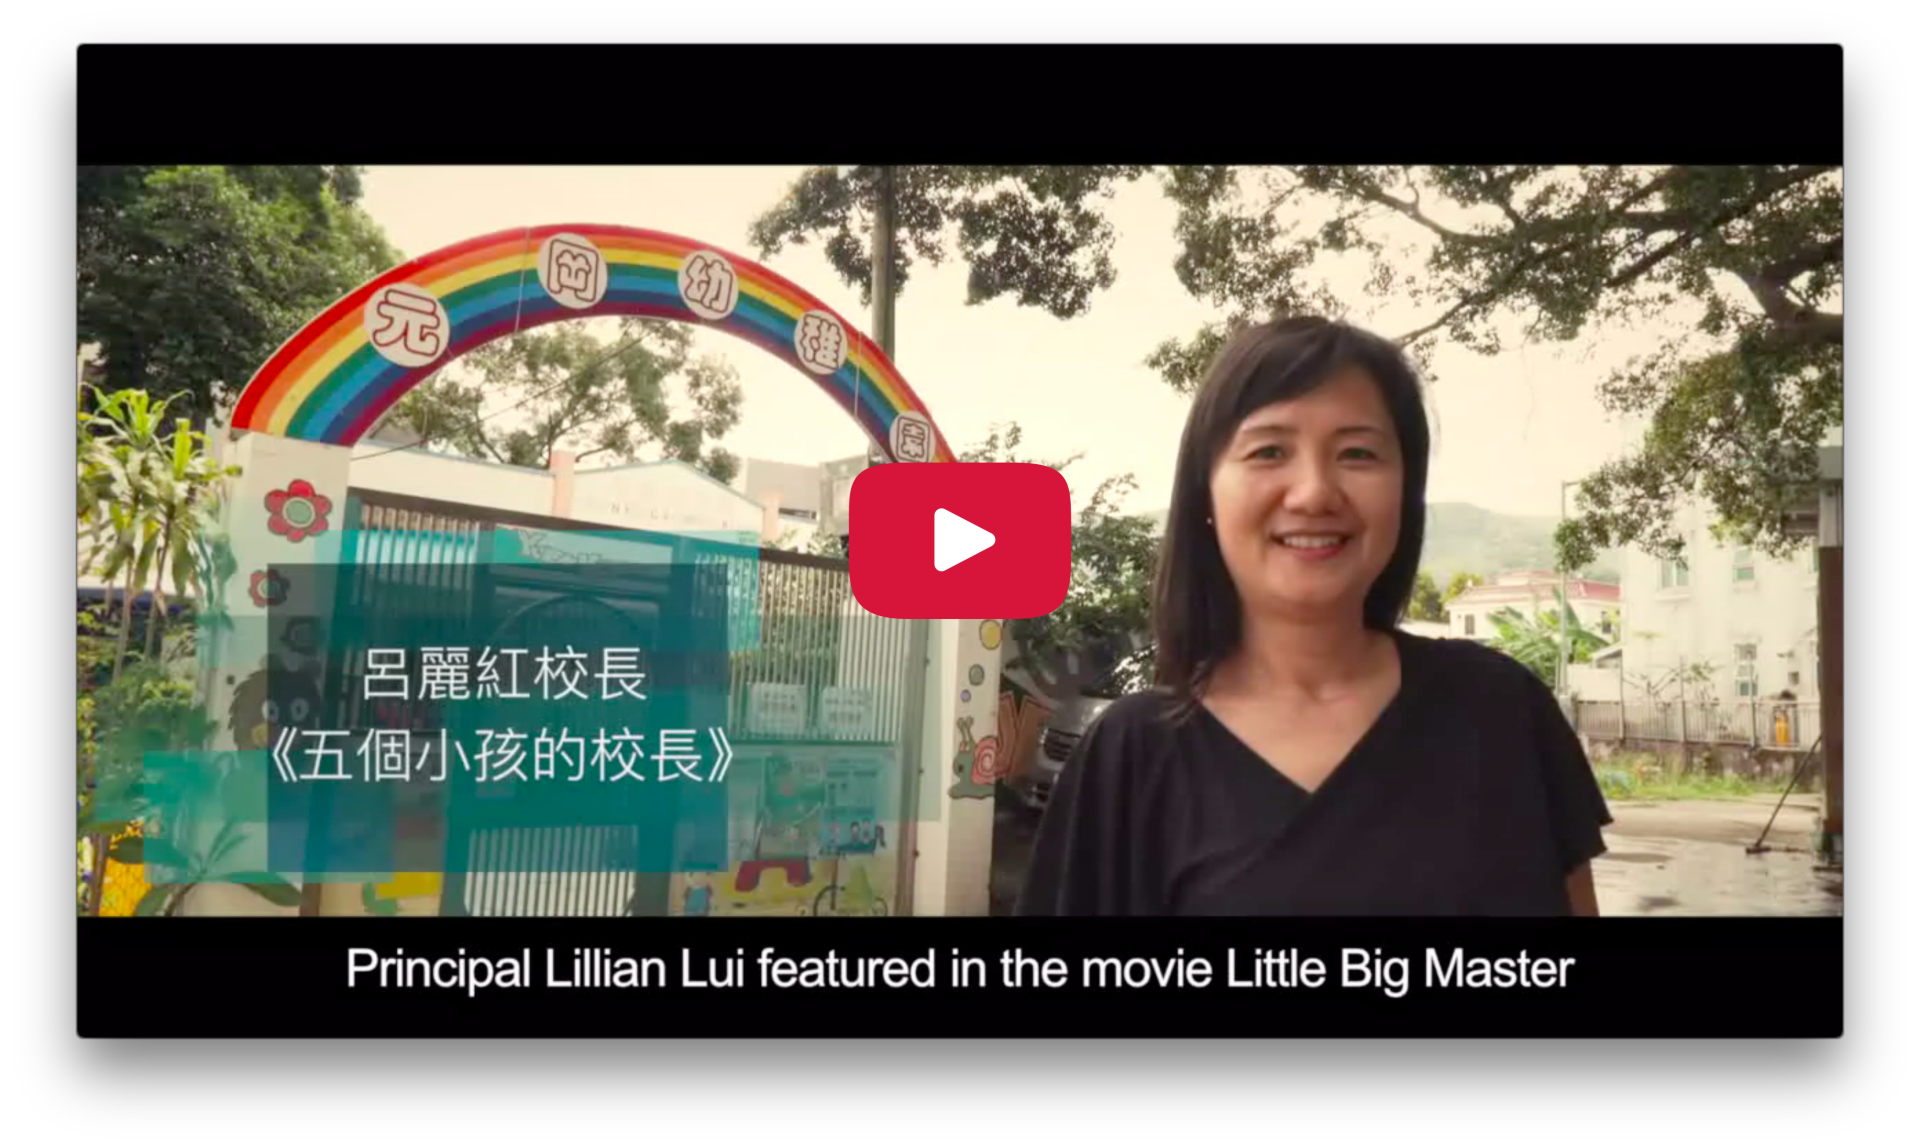 2016 Character Day Hong Kong Ambassador - Lillian Hui